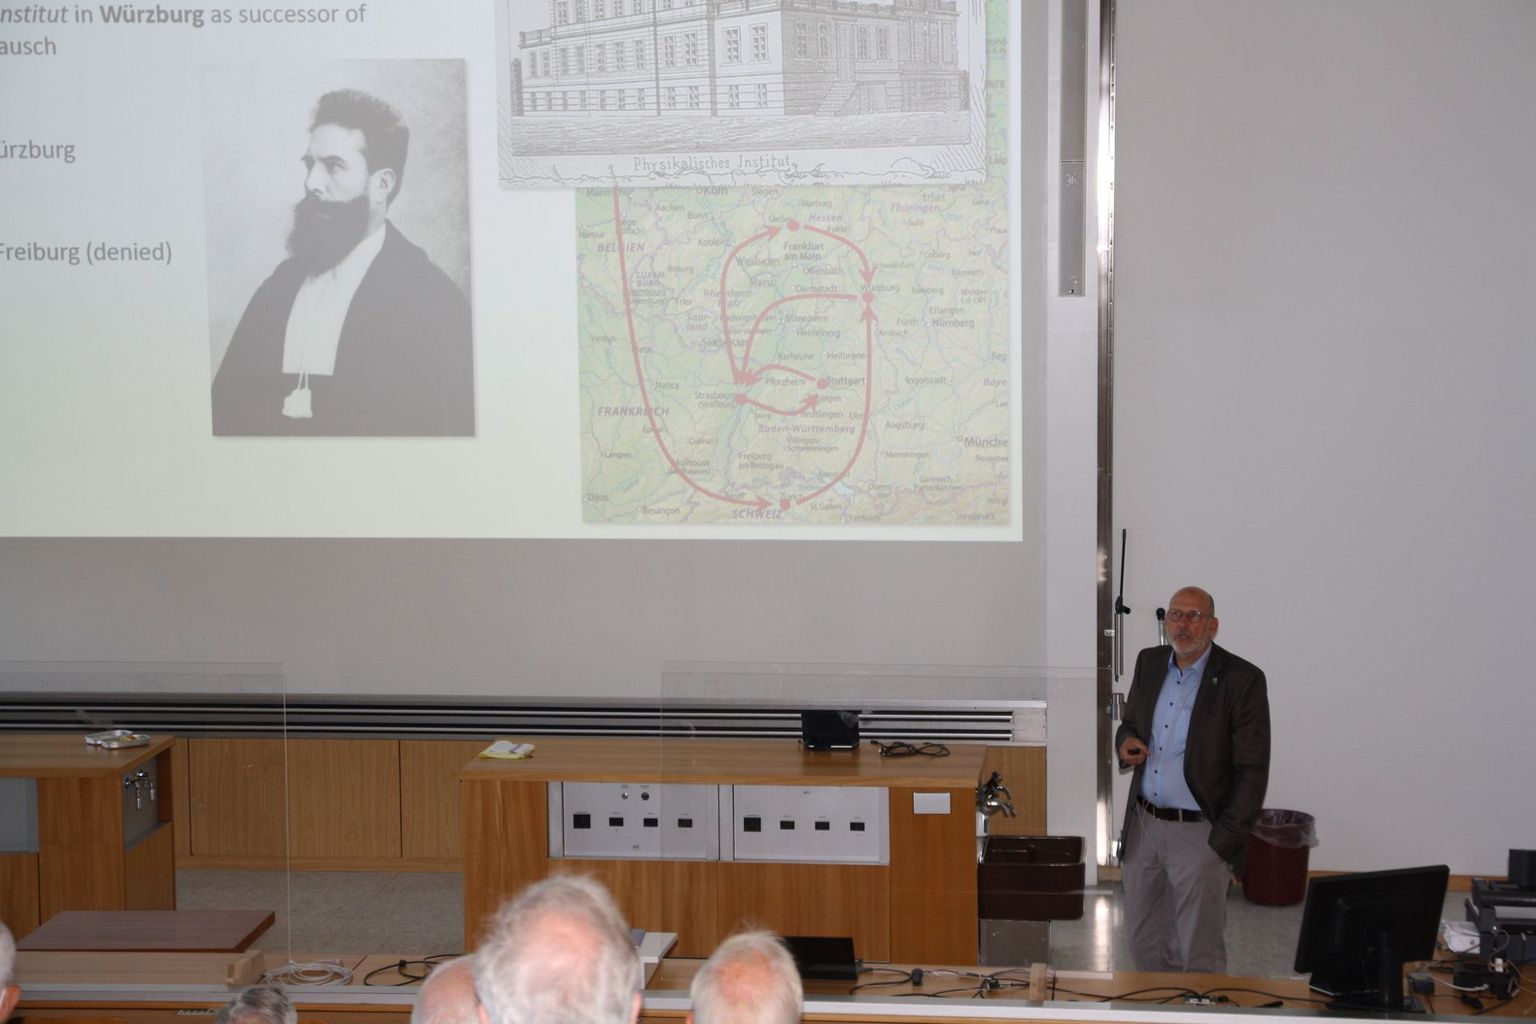 Prof. Dr. Ralph Claessen von der Universität Würzburg beschreibt Röntgens Werdegang.